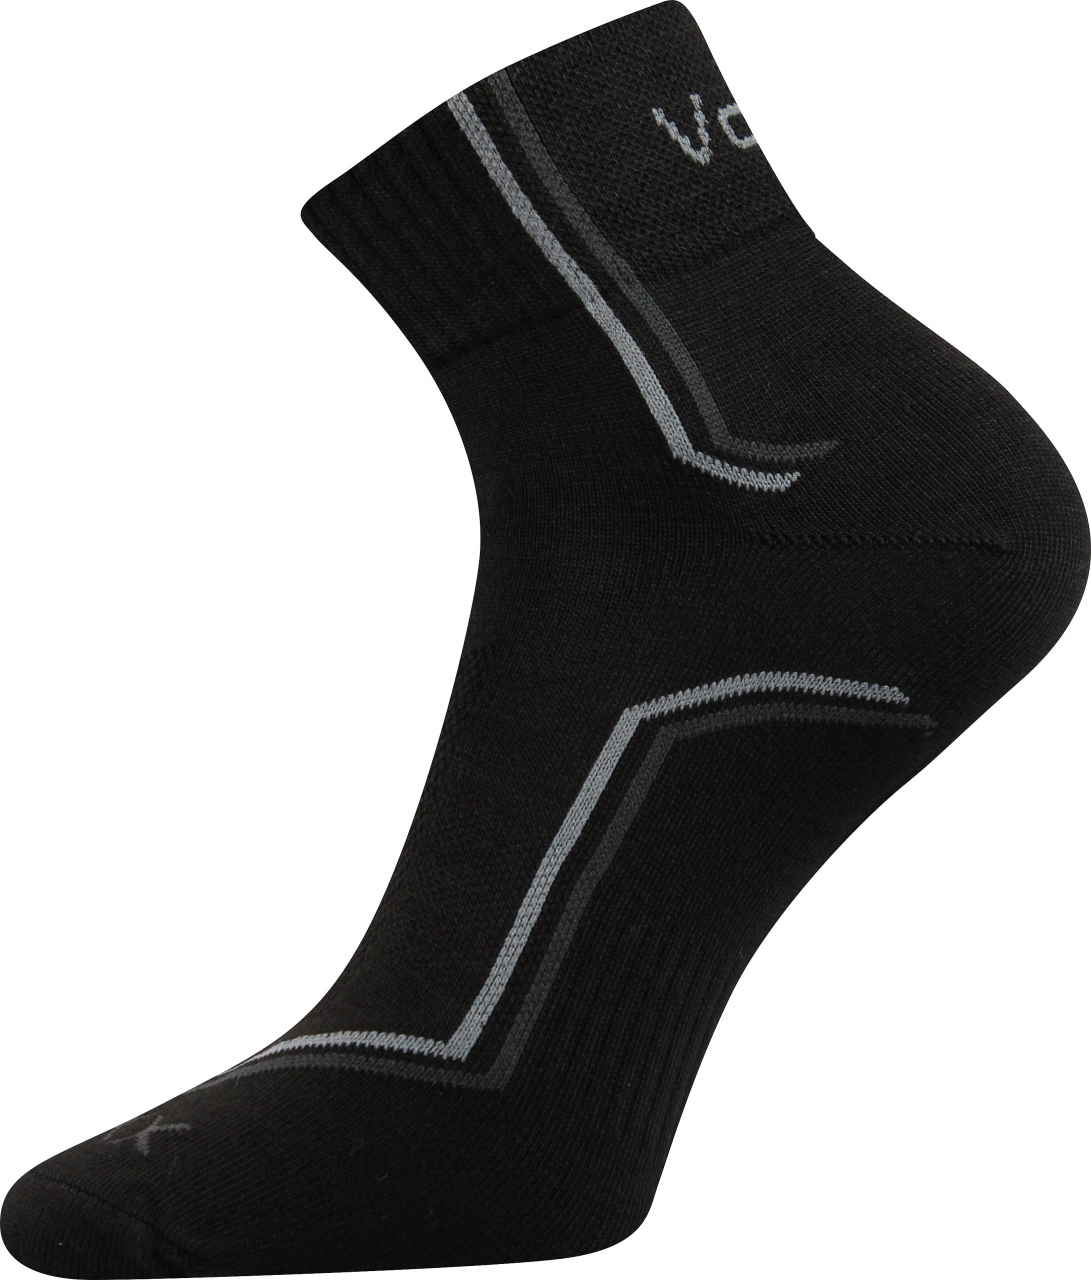 Ponožky sportovní Voxx Kroton silproX - černé, 35-38